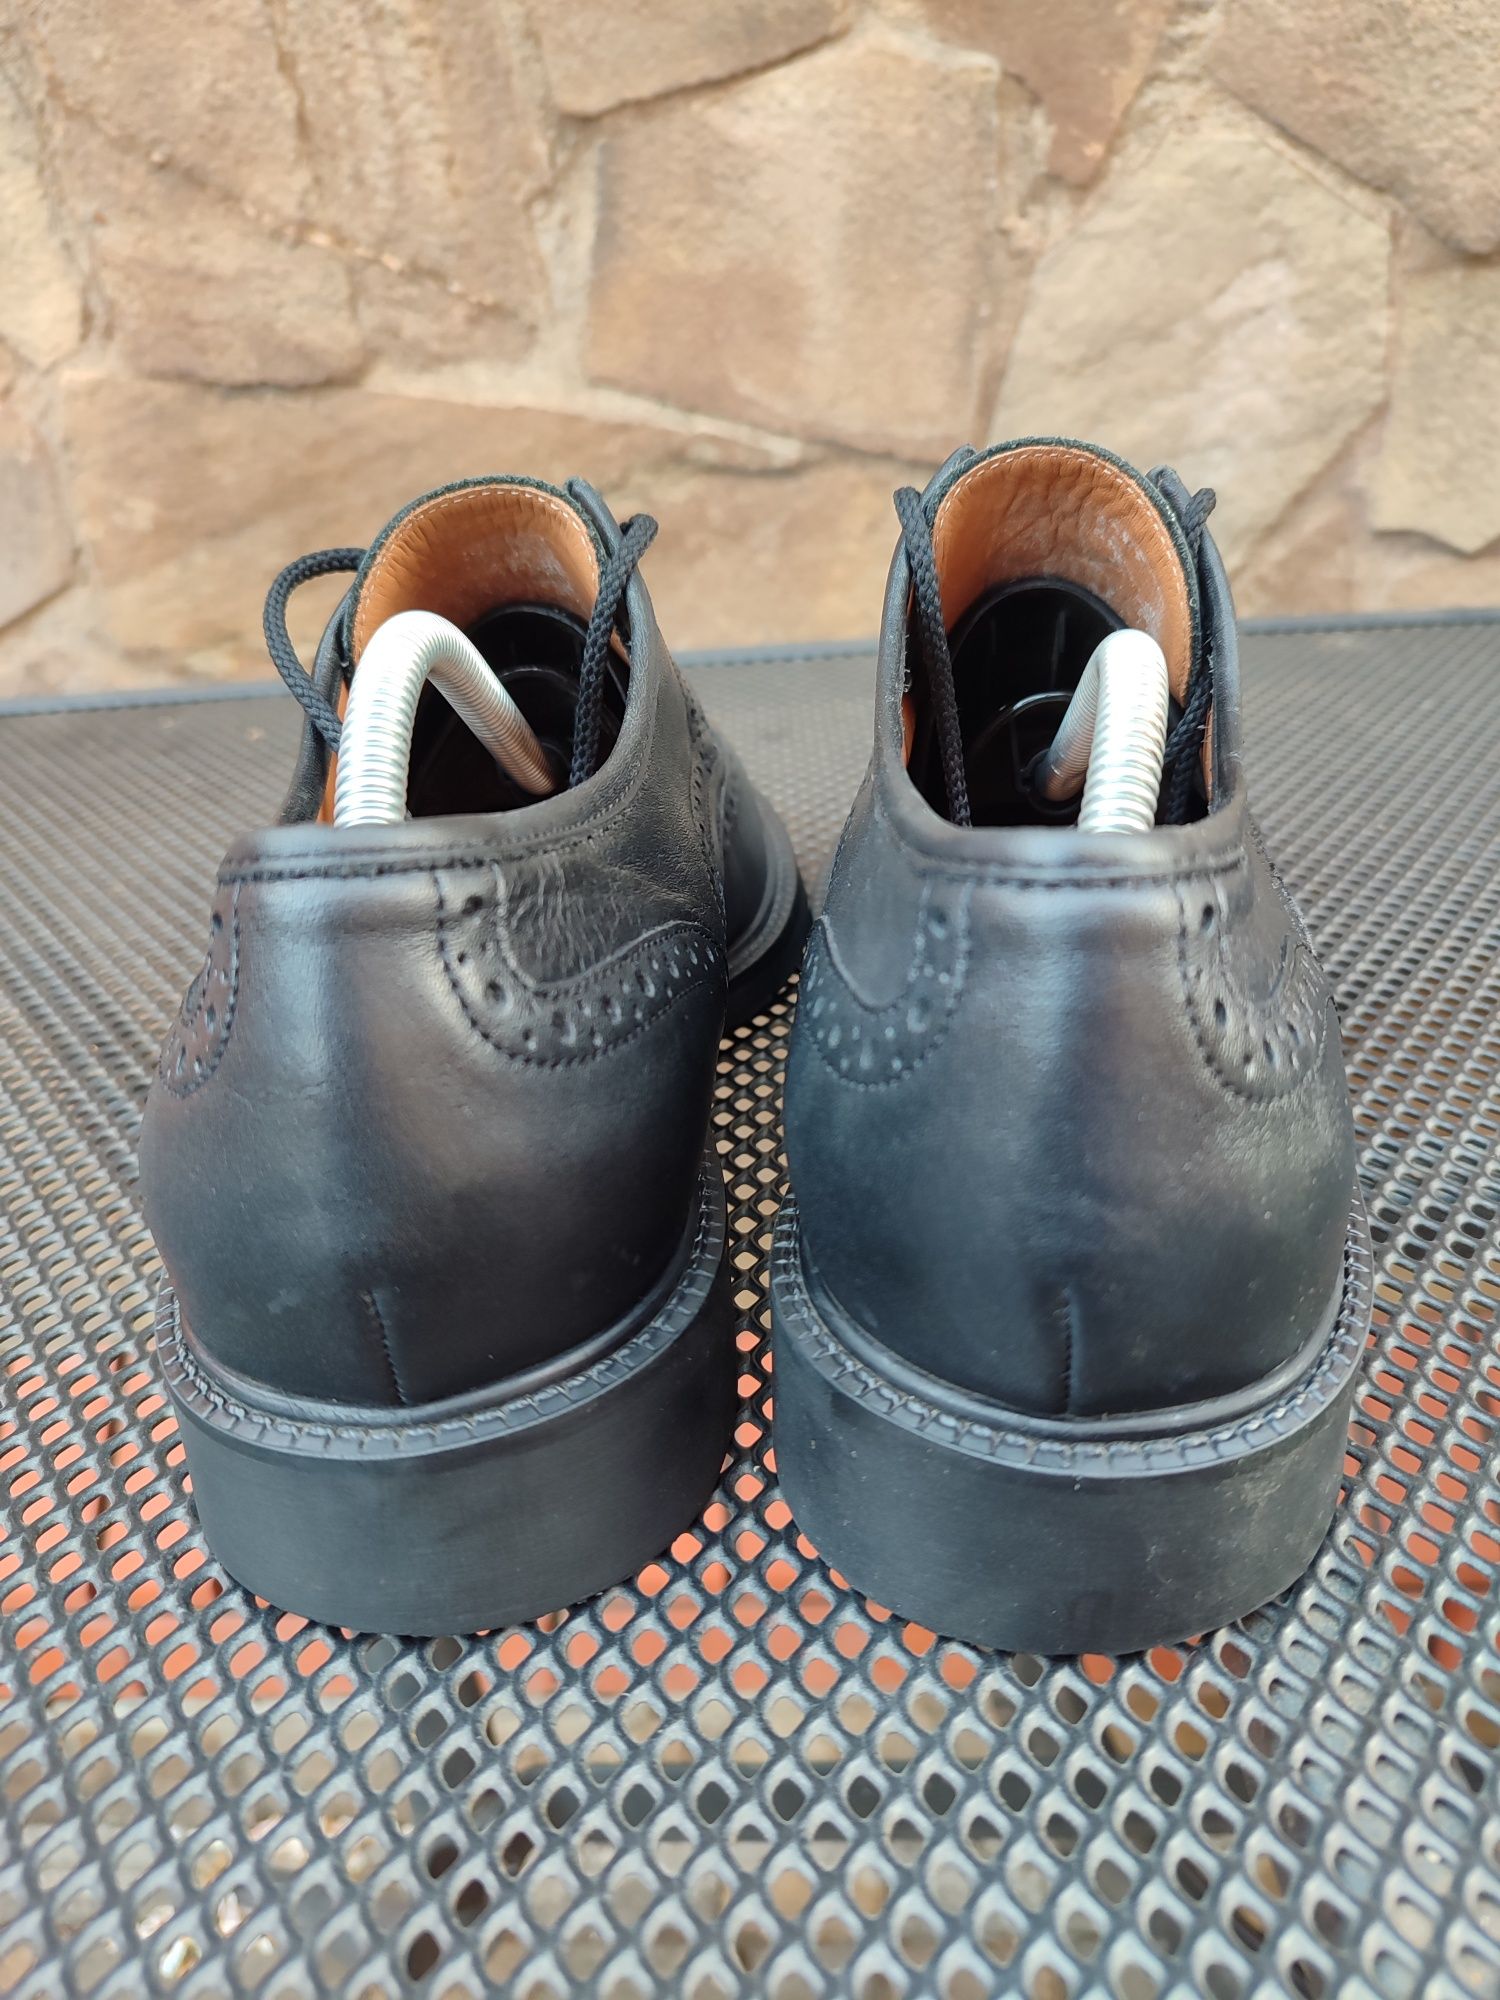 Кожаные оригинальные туфли Sioux Gore-tex 44 р-р Германия